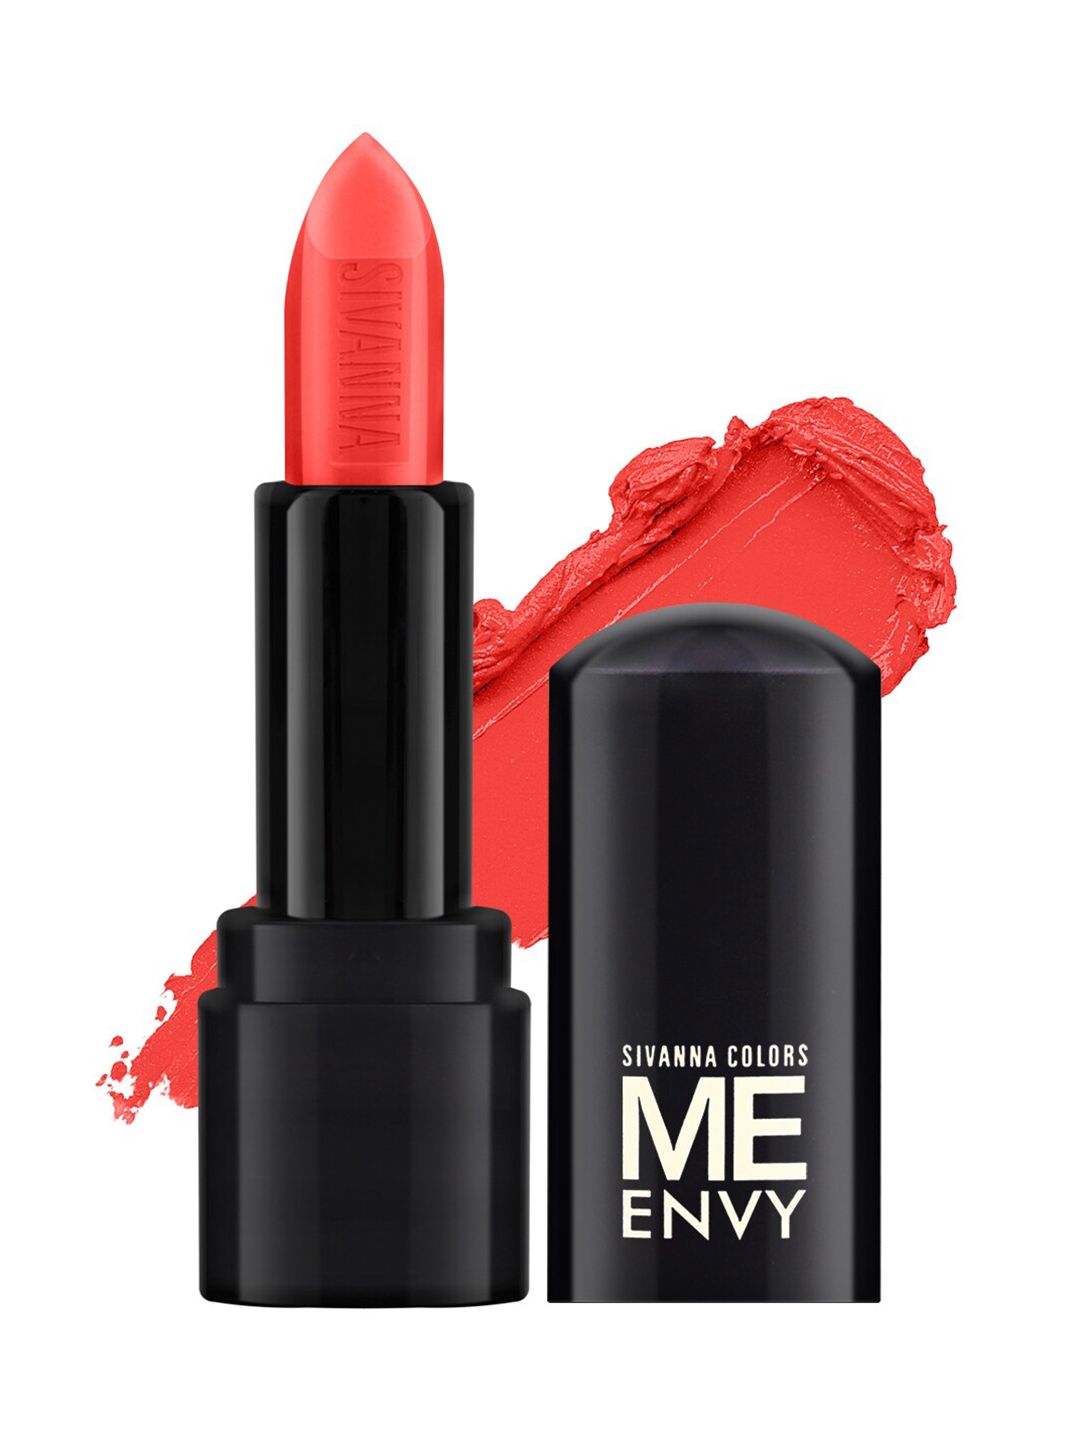 Sivanna Colors Orange Me Envy Matte & Glossy Lipstick-HF50112 02 Price in India